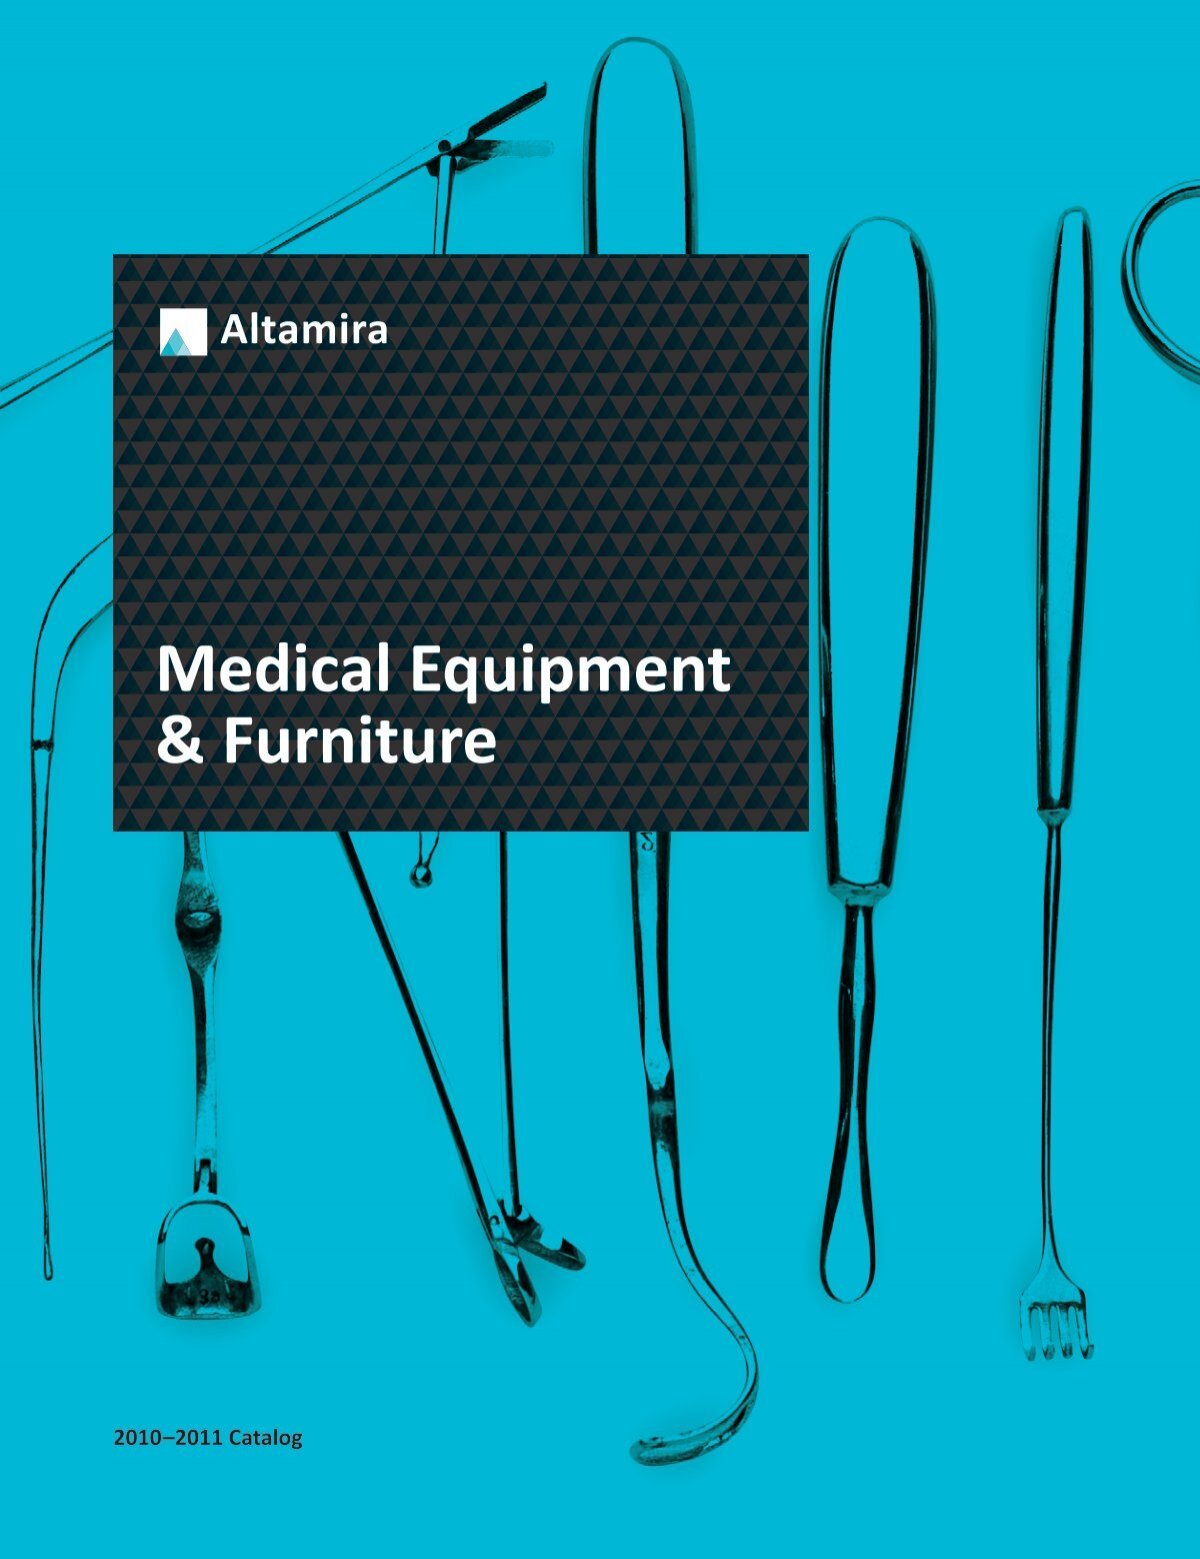 Medical Equipment & Furniture - Altamira/Medical